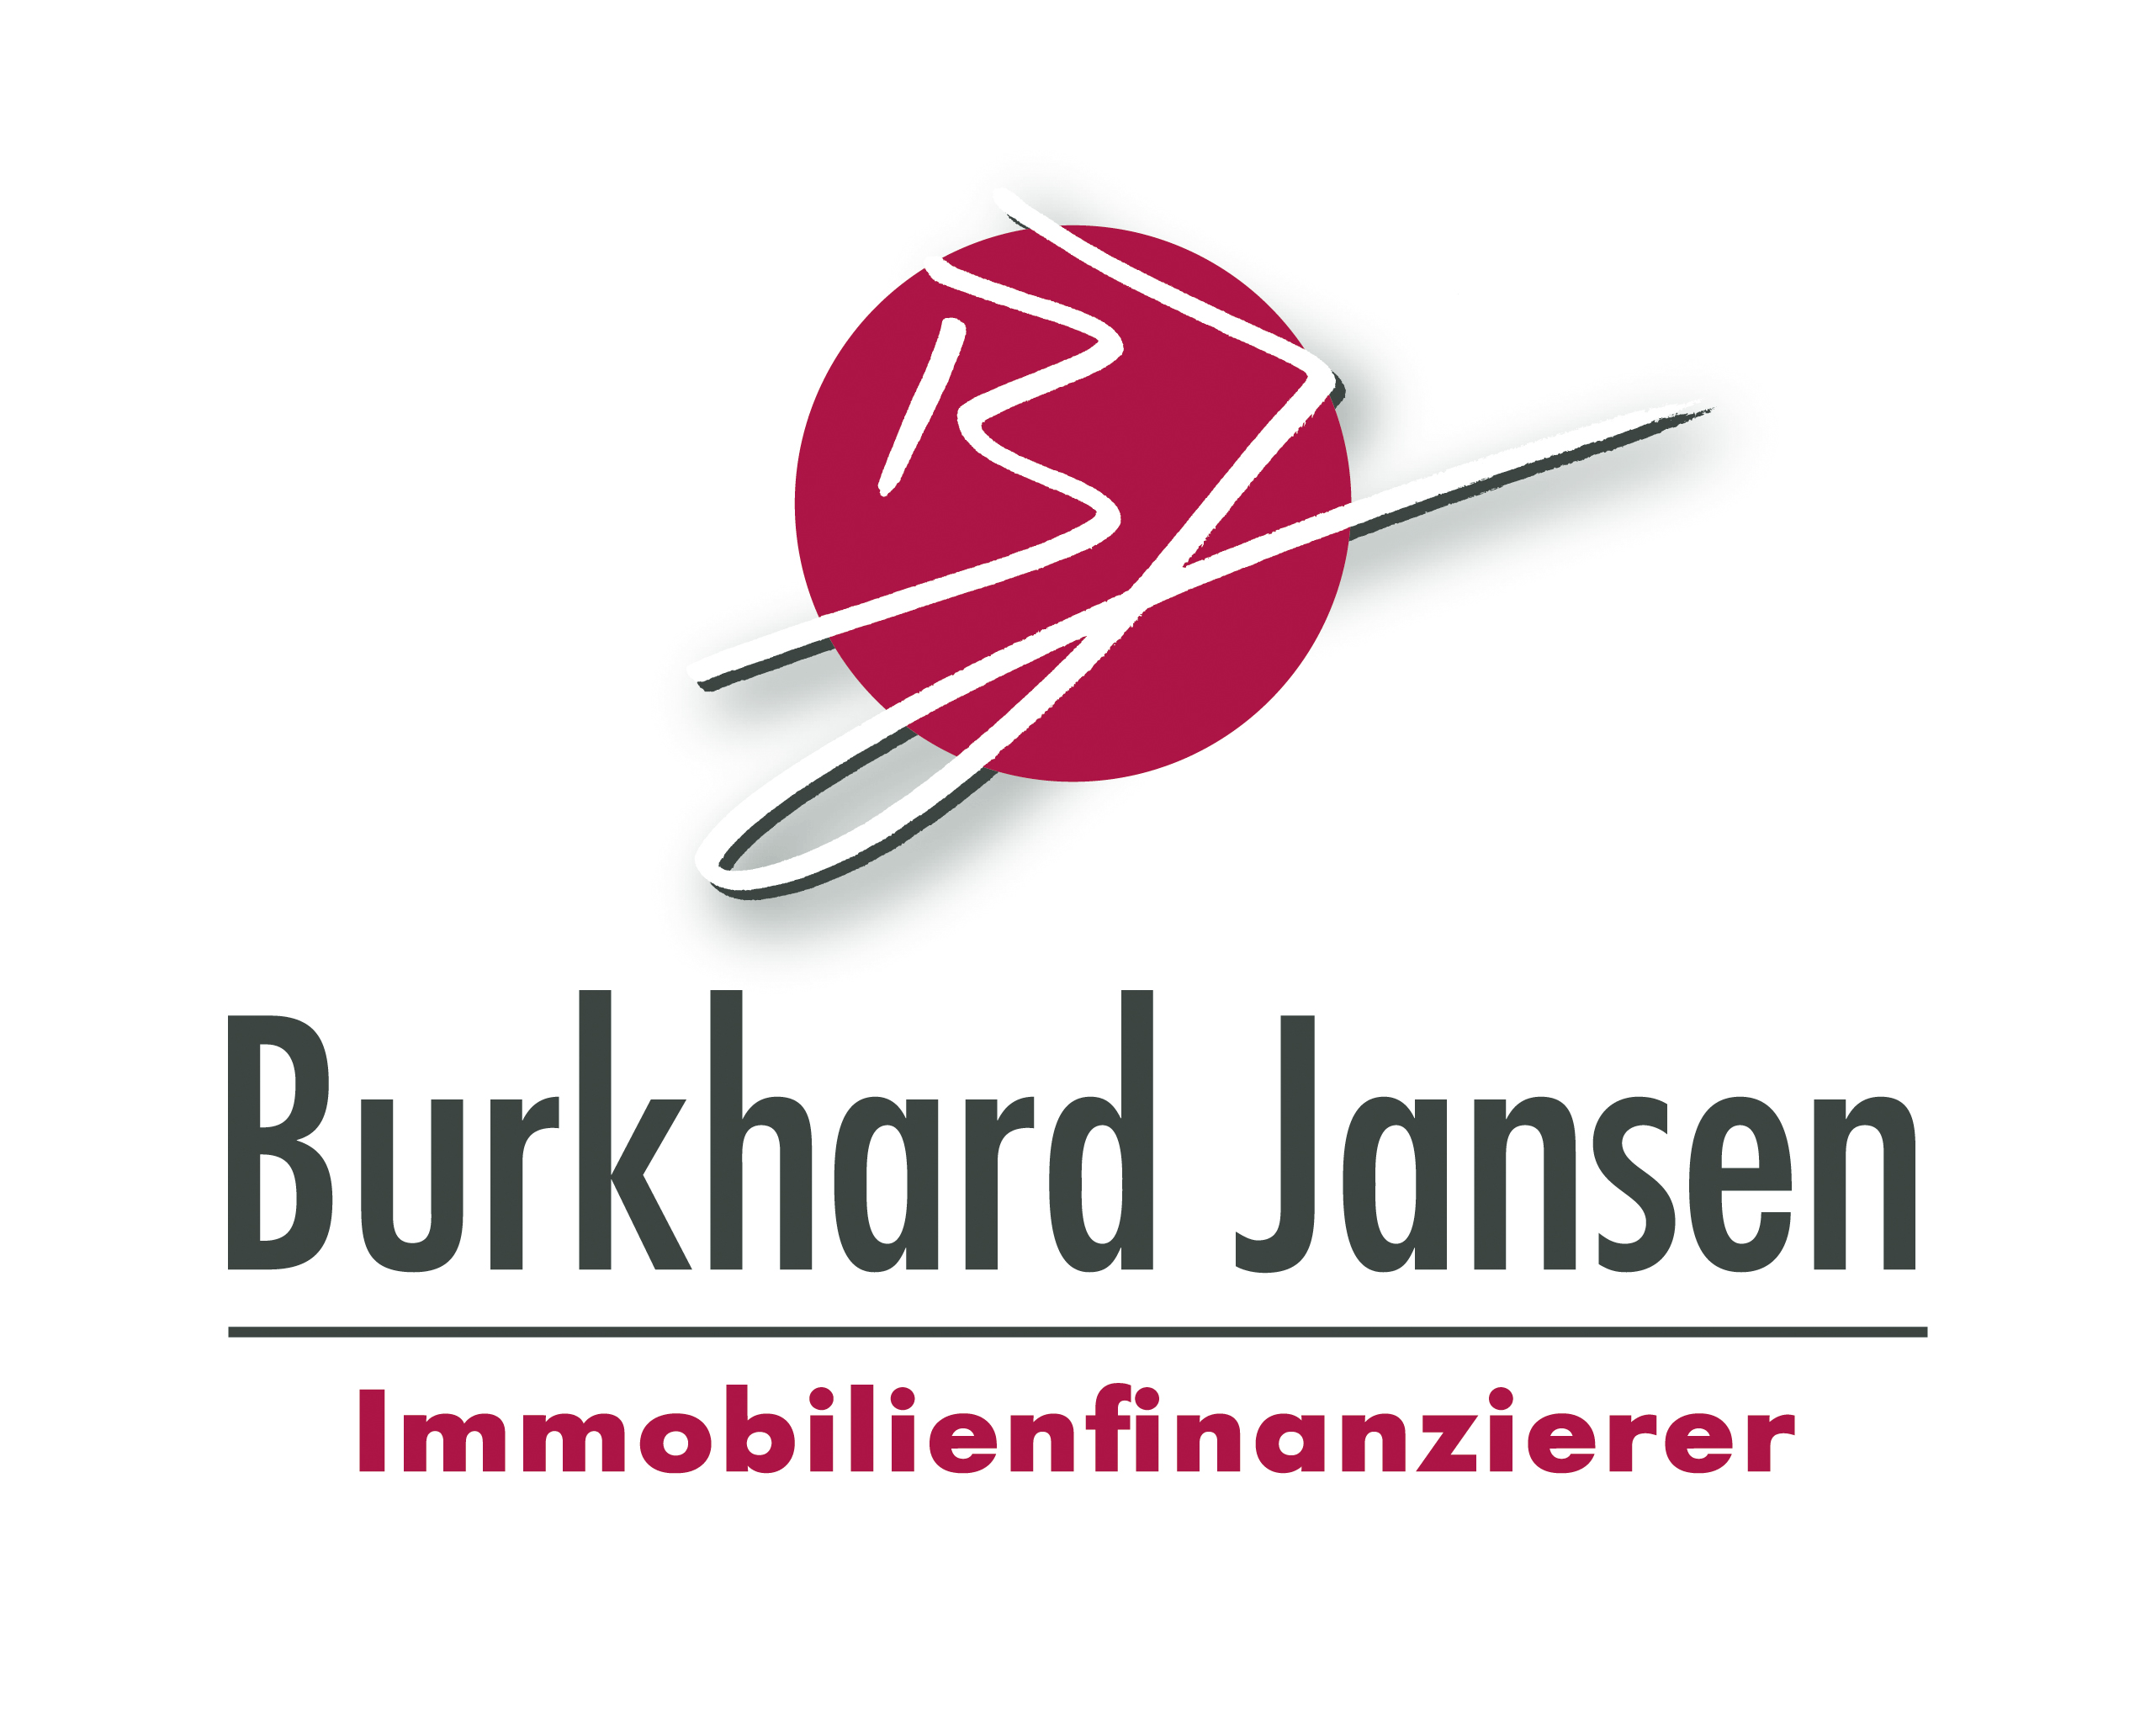 Email an Info@BurkhardJansen.de